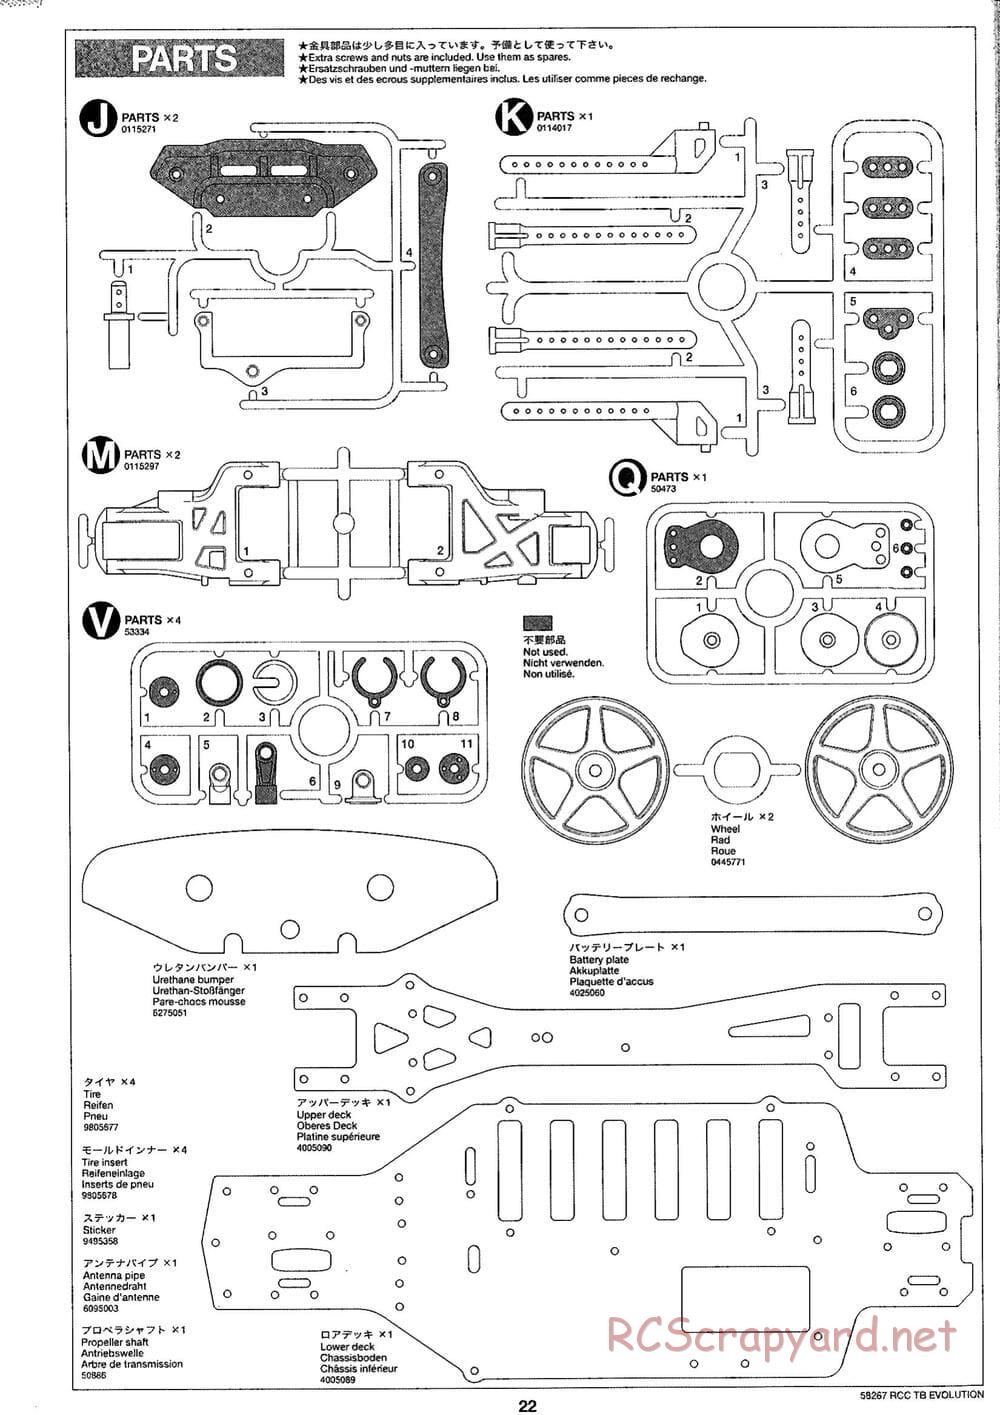 Tamiya - TB Evolution Chassis - Manual - Page 22